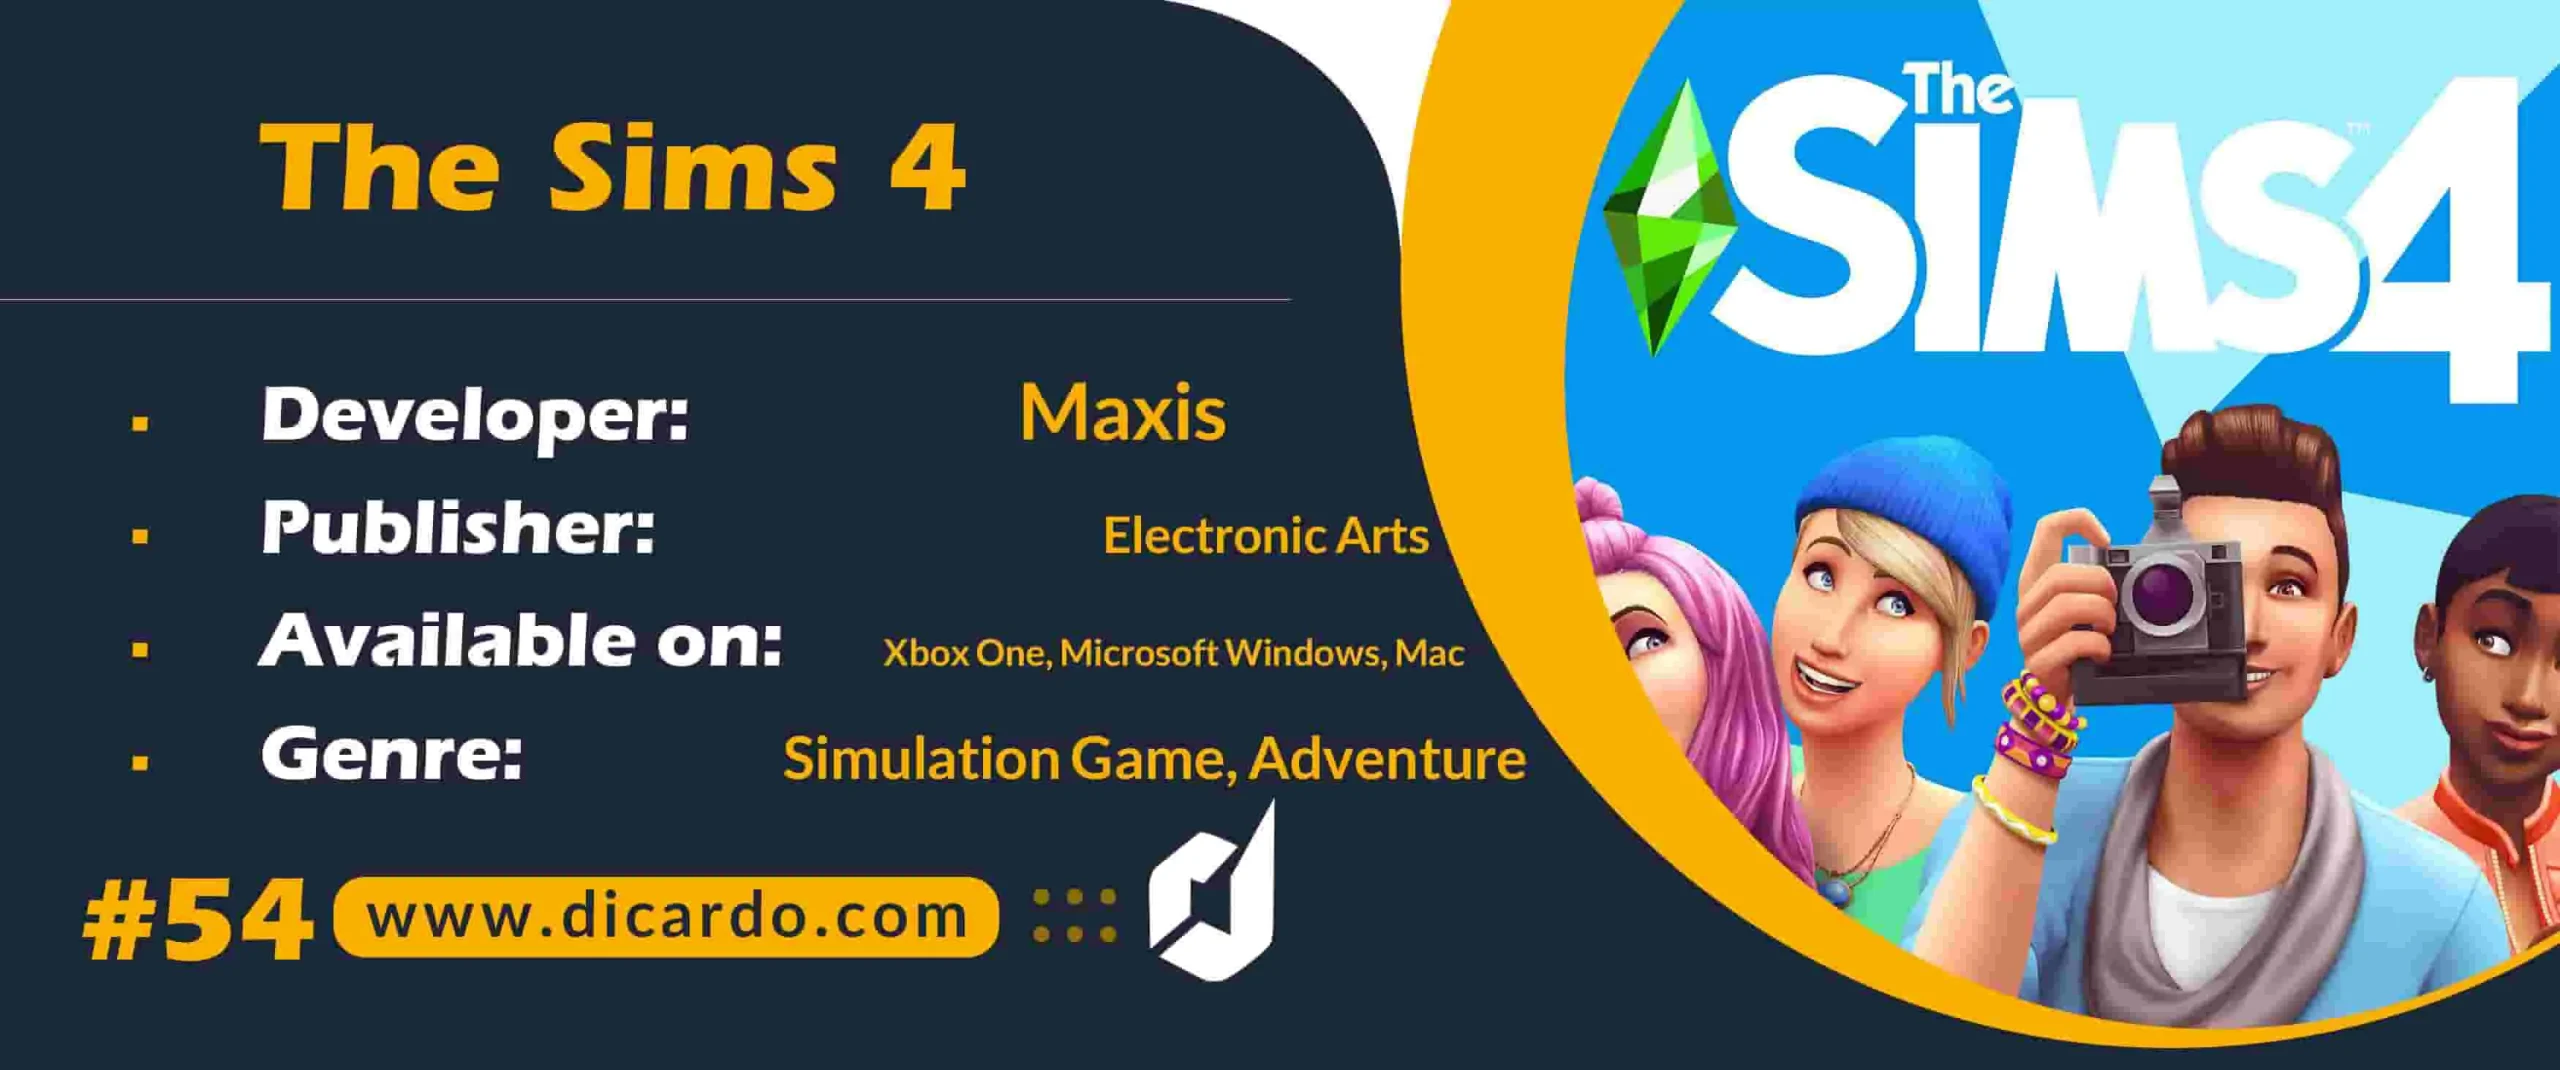 #54 د سایمز 4 The Sims 4 از بهترین بازیهای کامپیوتری در ژانر شبیه سازی اجتماعی